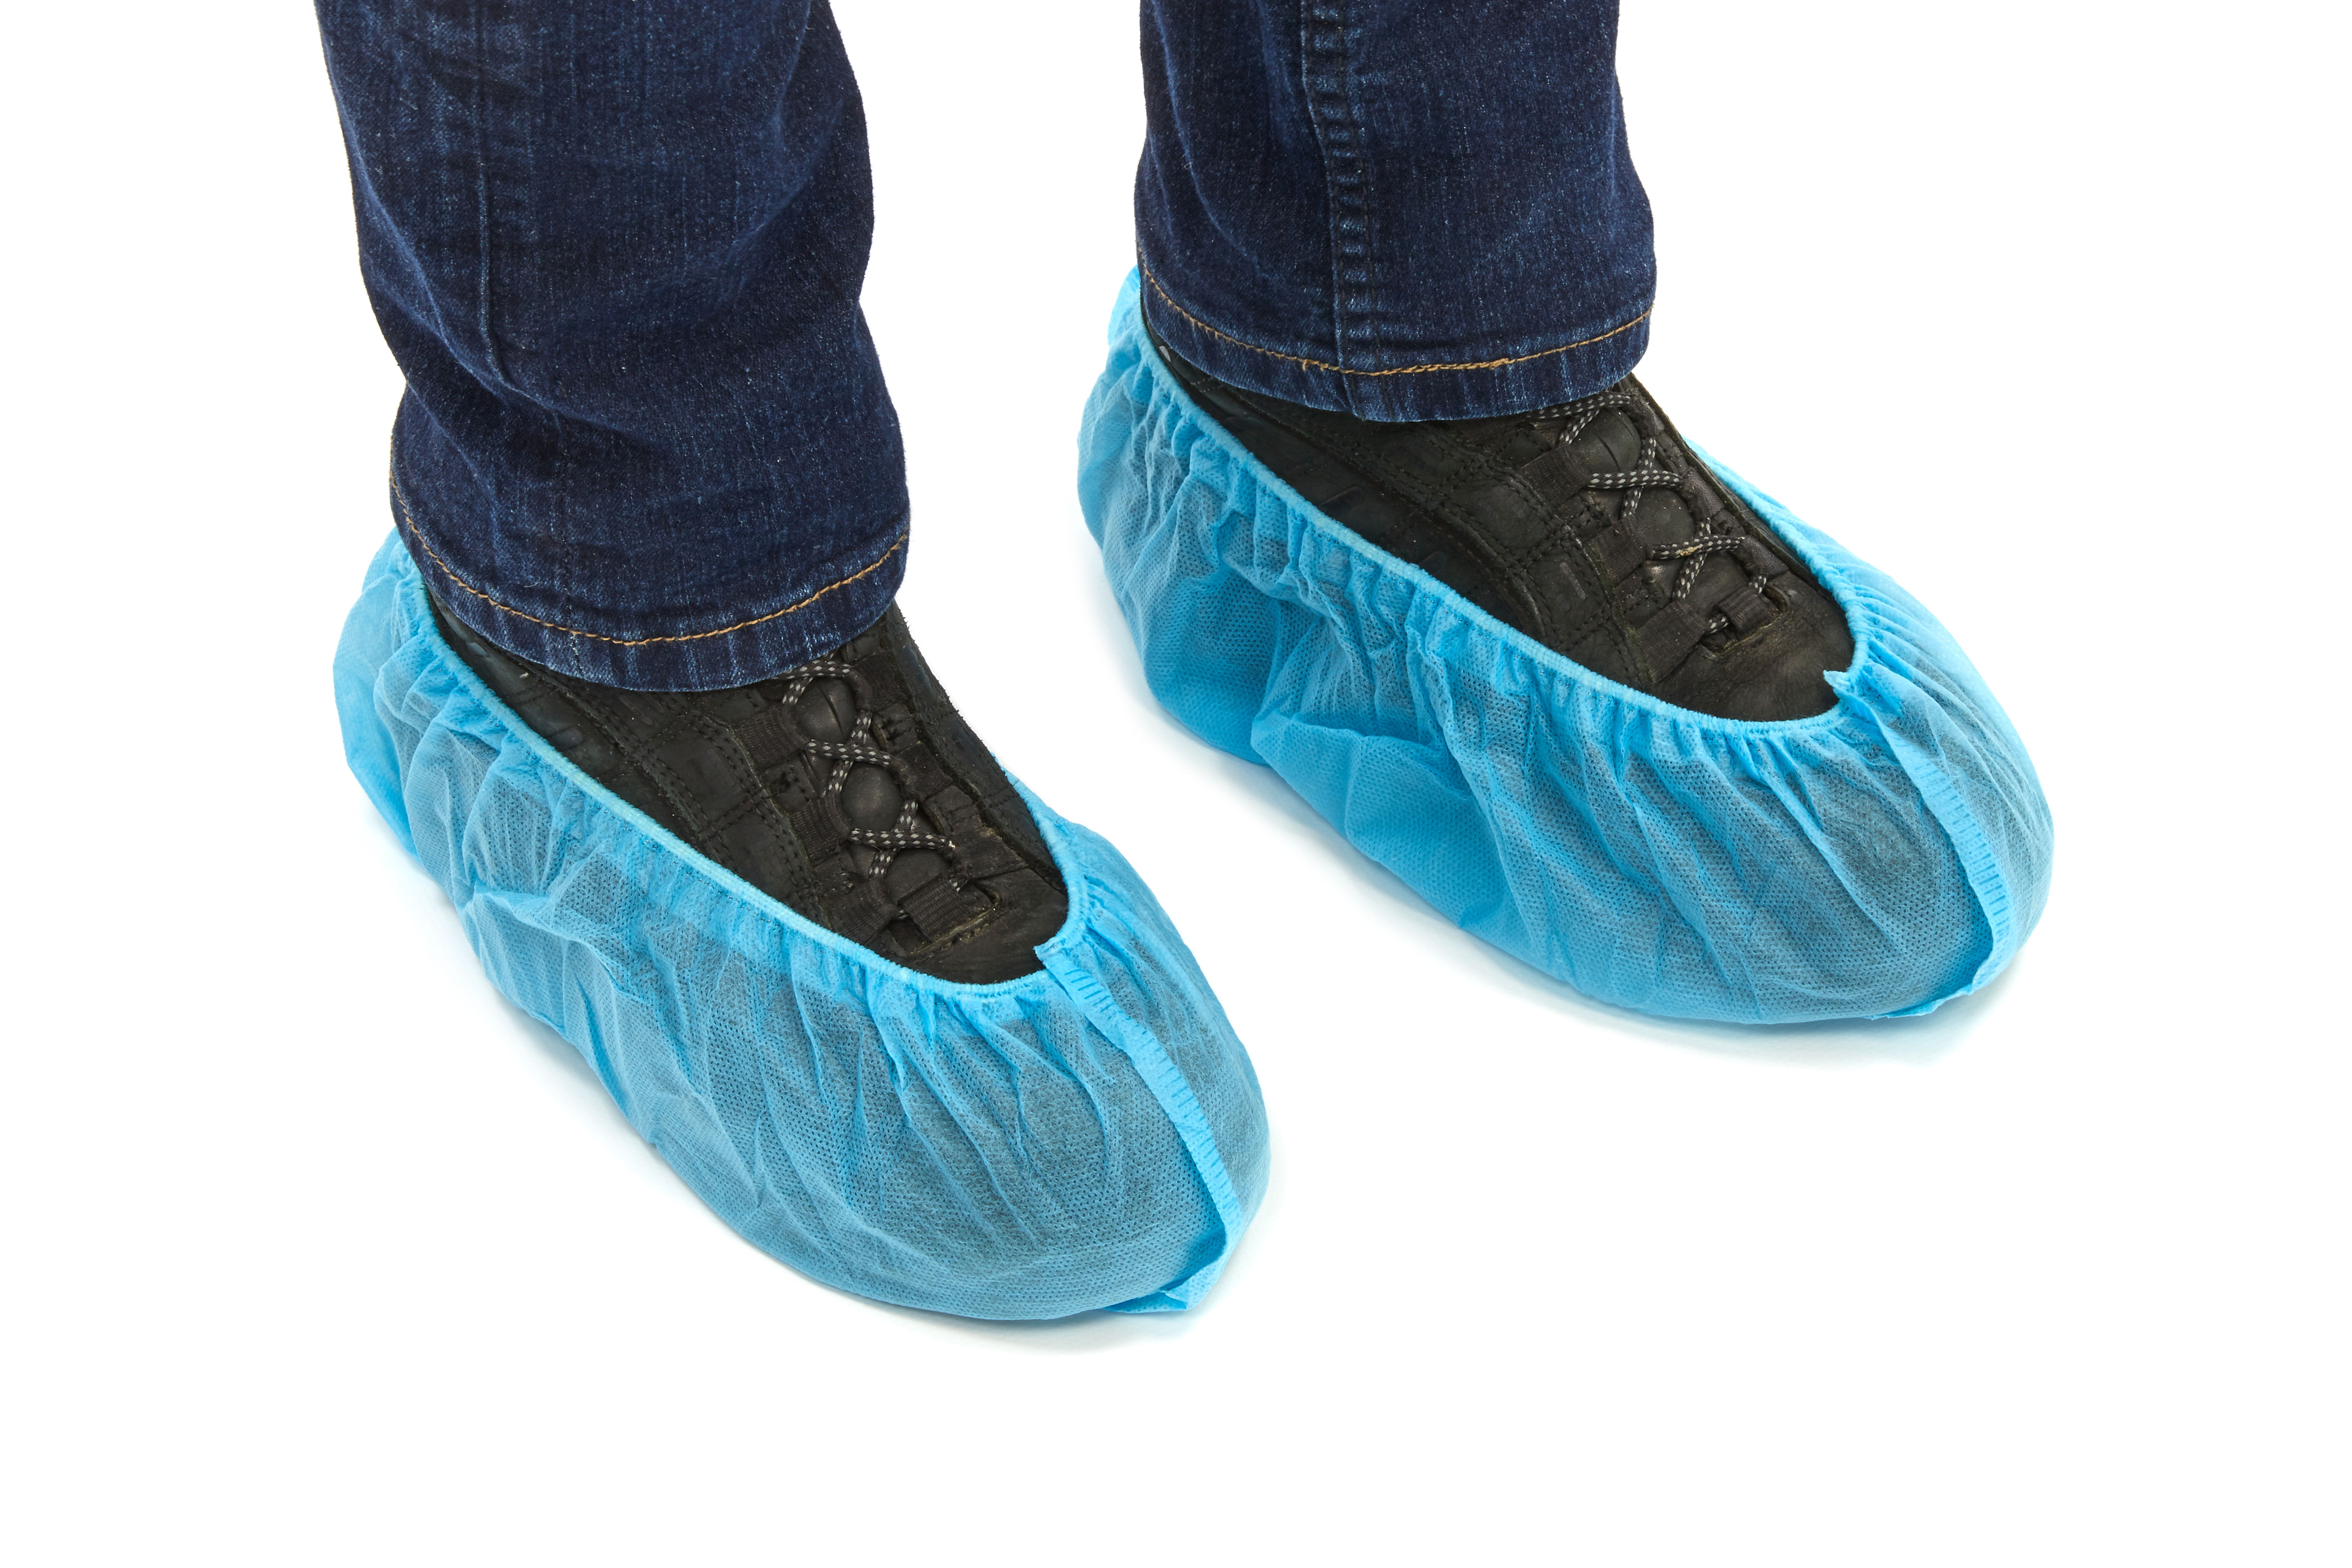 SC-1000-NWAS Coberturas para sapatos Romed, azuis, não-tecido, antiderrapantes, tamanho: 16 x 38 cm, 10 un. em pacote, 10 x 10 = 100 un. em saco de polietileno, 10 x 100 un. = 1000 un. por caixa de envio.